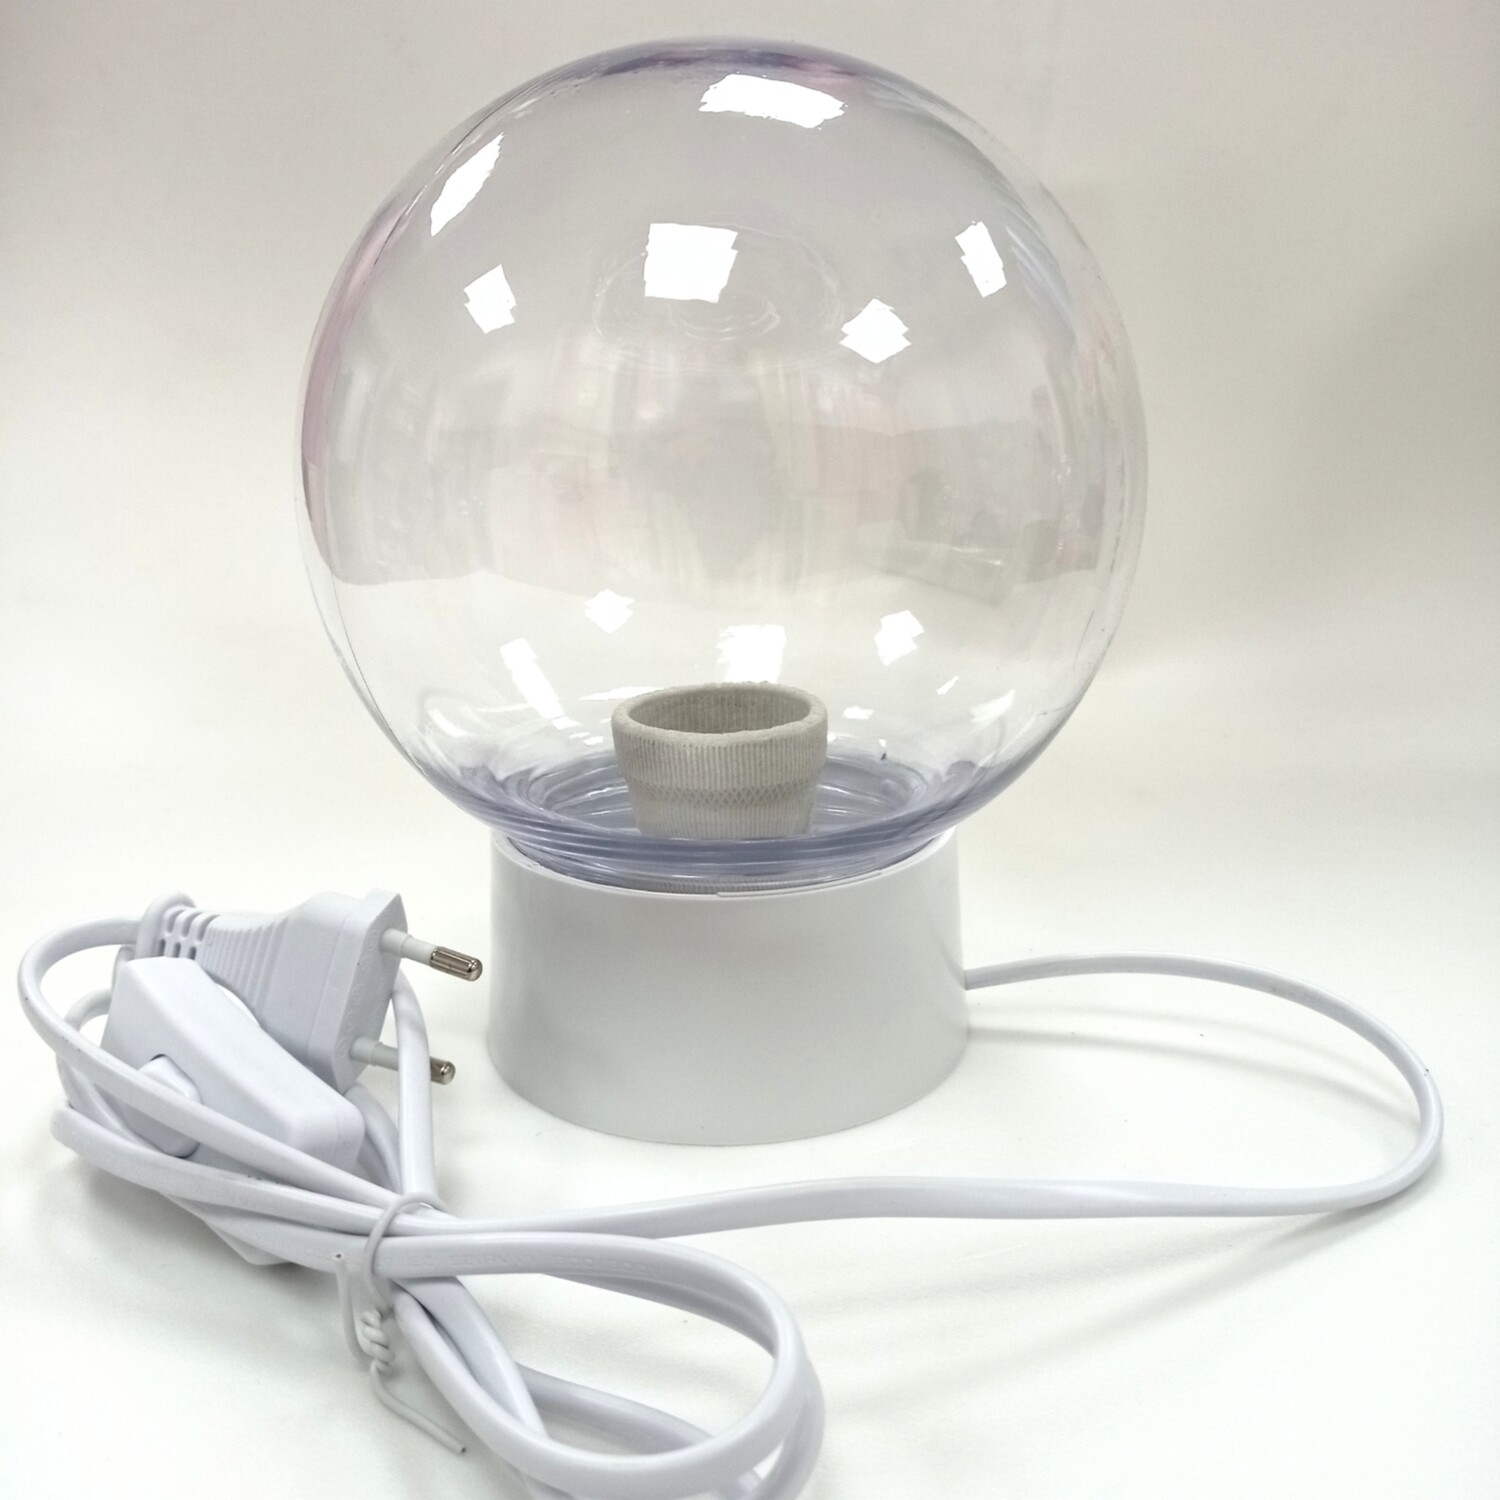 Готовый светильник (d-15см) из ударопрочного прозрачного пластика с подключенным сетевым шнуром - БЕЛЫЙ